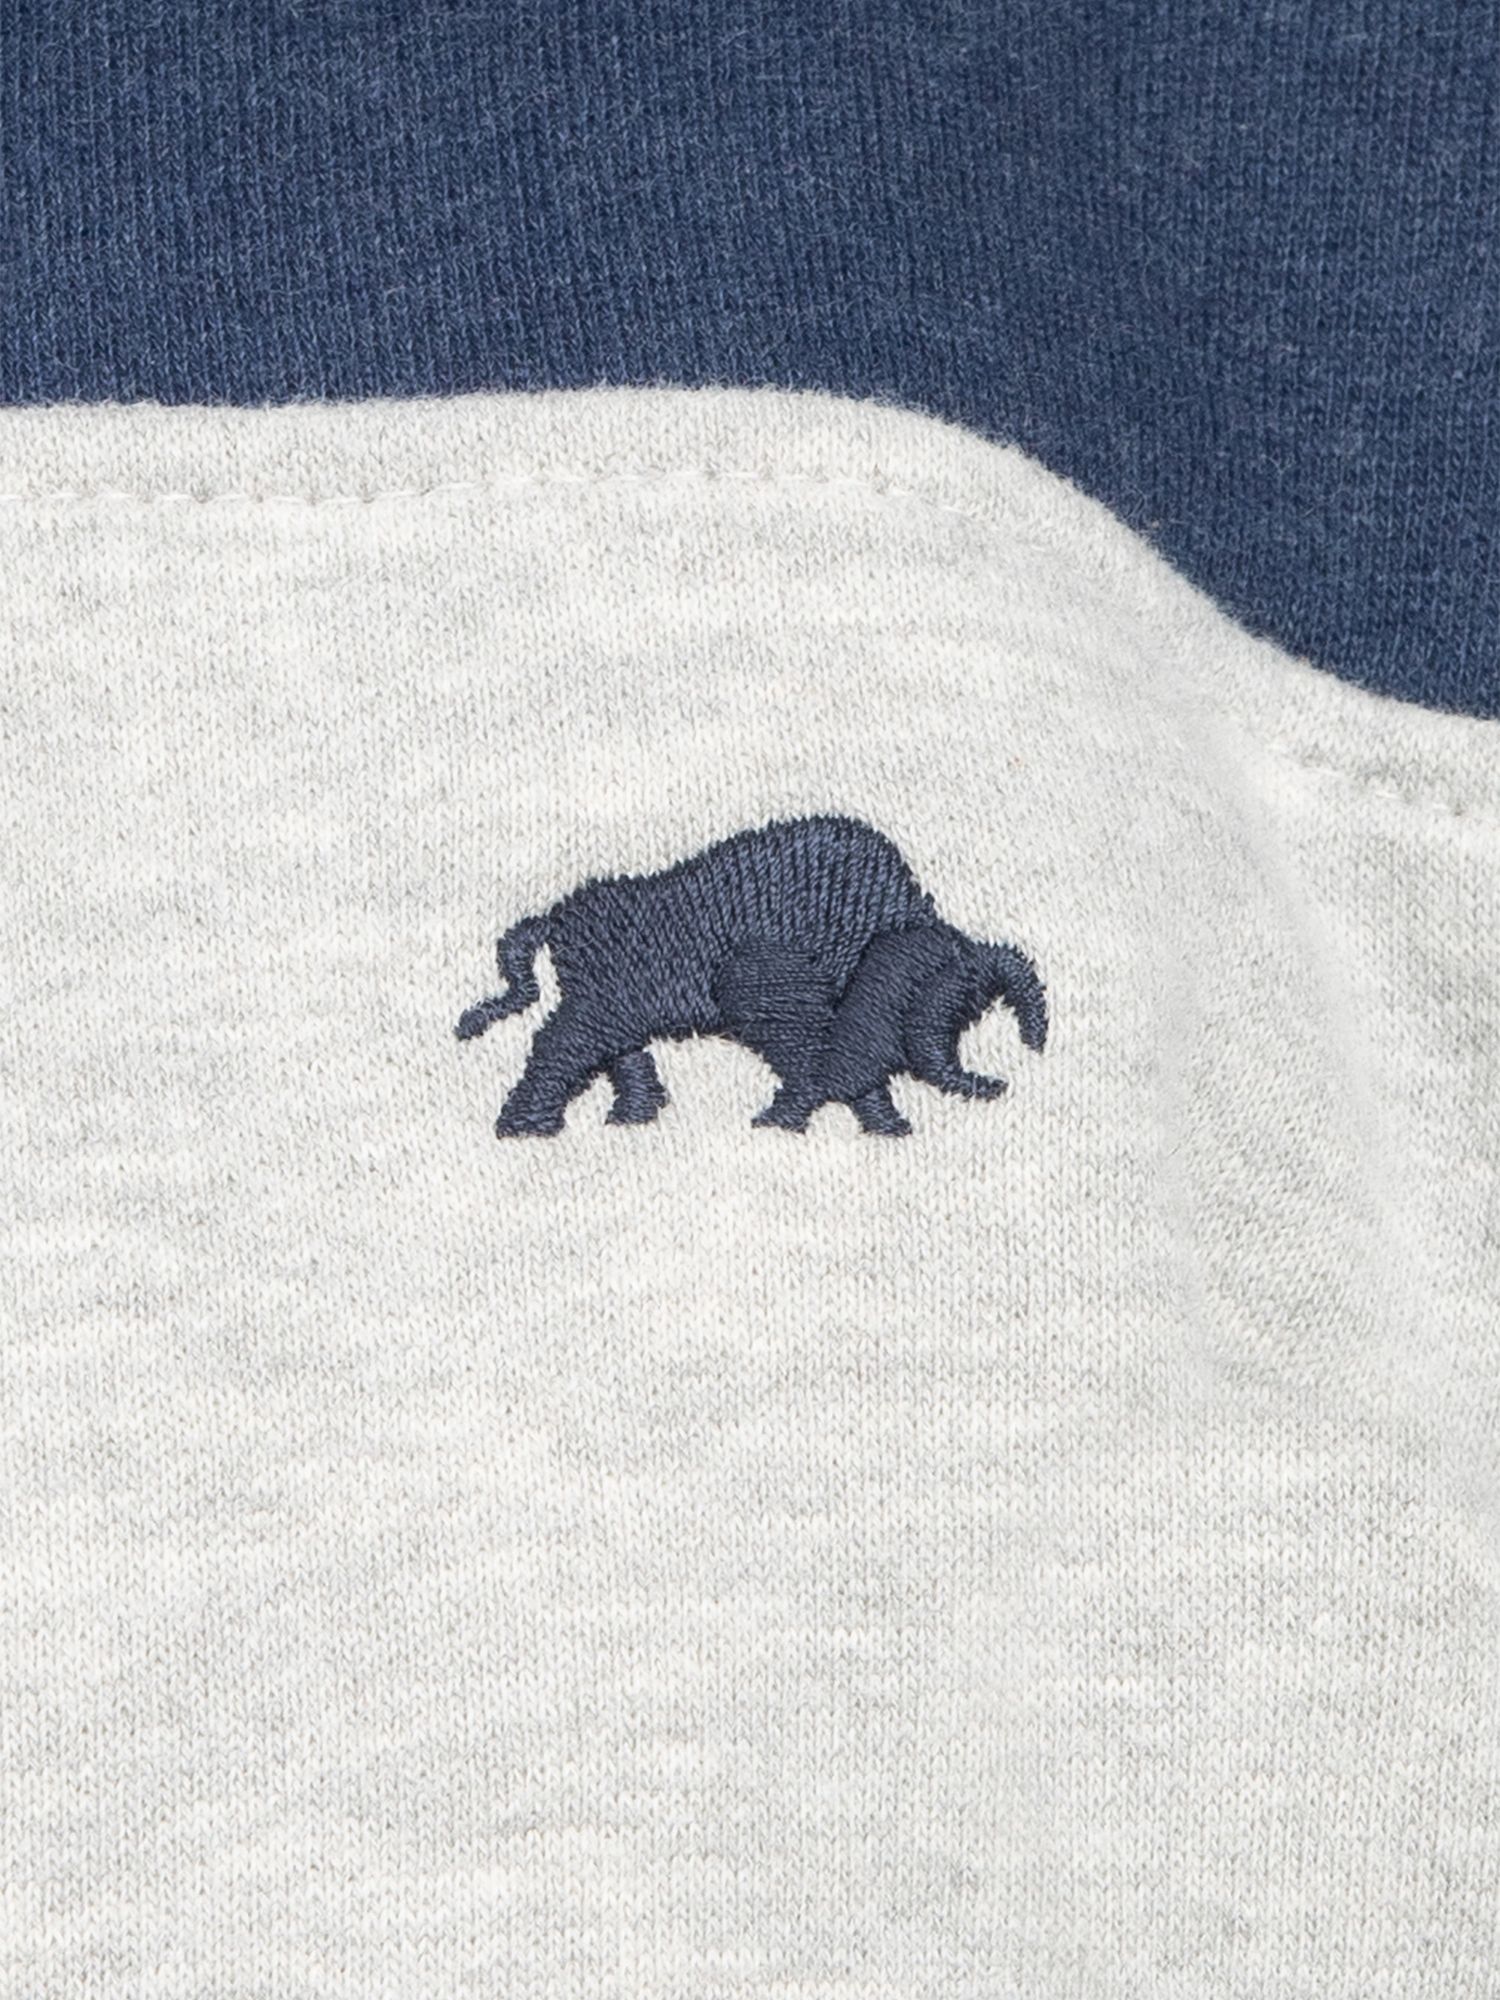 Raging Bull Kids' Quarter Zip Brushback Sweatshirt, Navy/Grey, 5-6 years